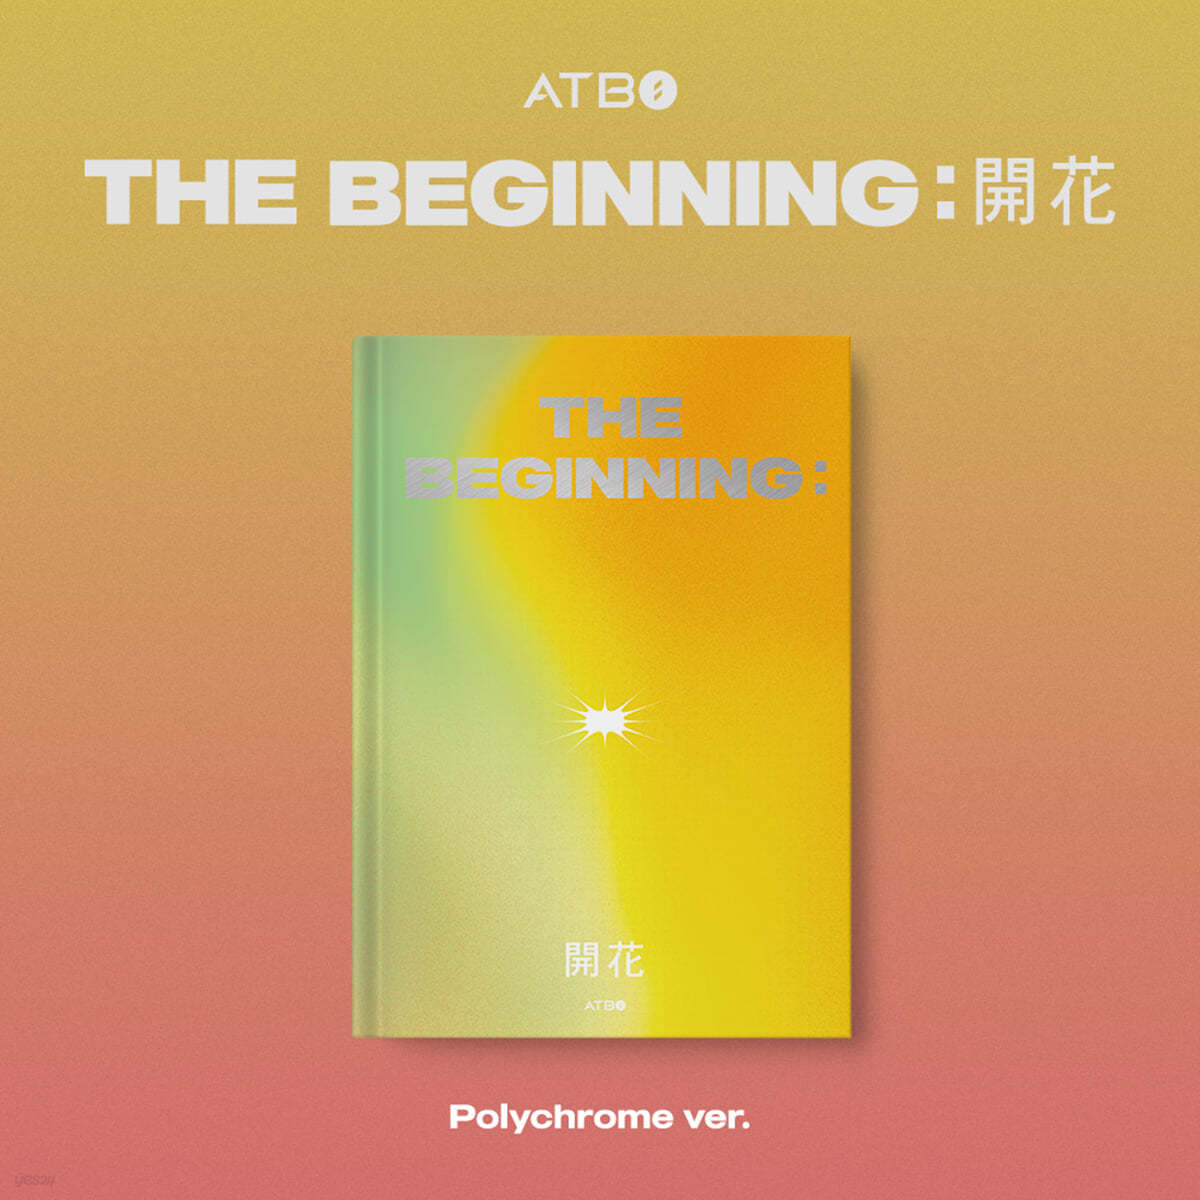 에이티비오 (ATBO) - ATBO DEBUT ALBUM : The Beginning : 開花 [Polychrome ver.]